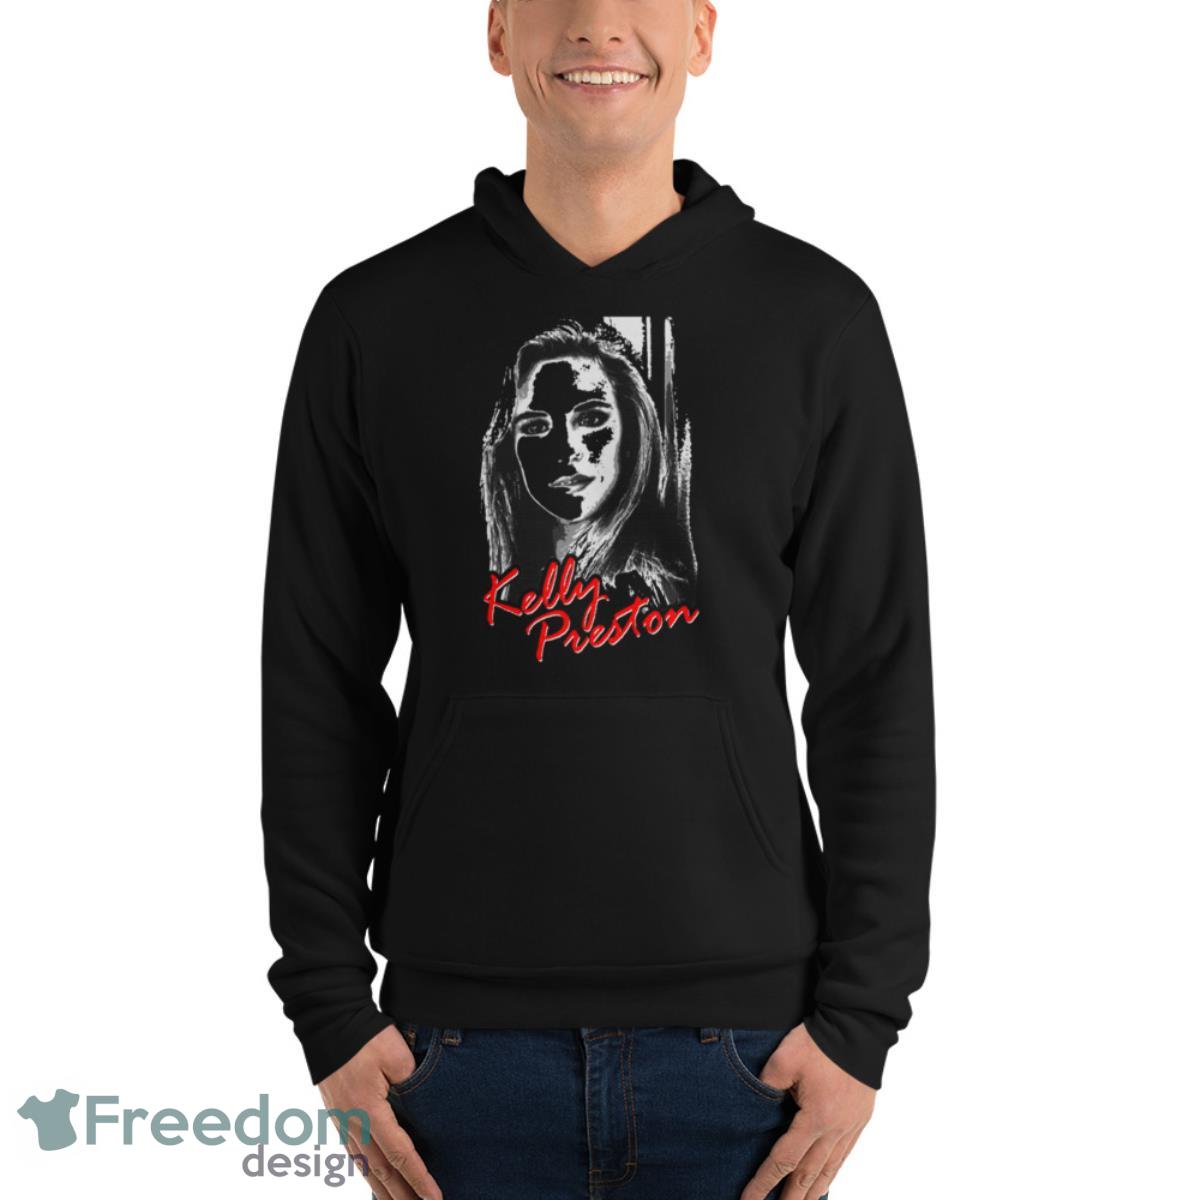 Actress Kelly Preston Art Shirt